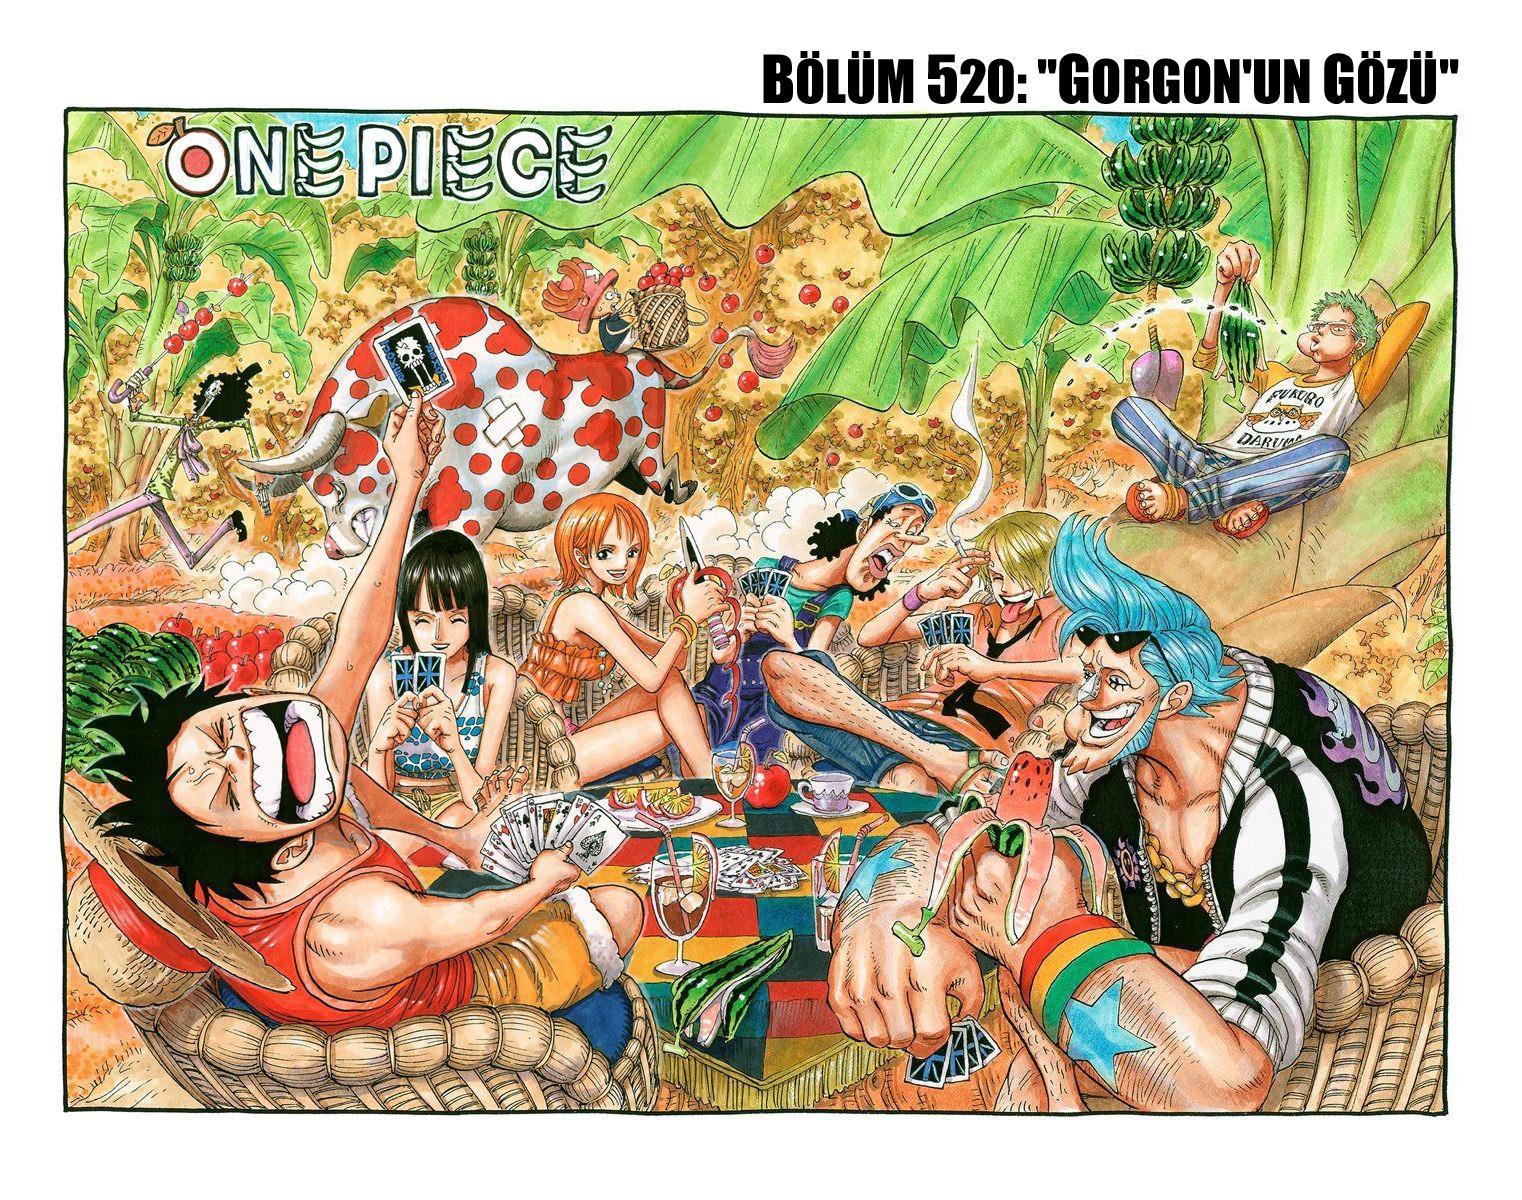 One Piece [Renkli] mangasının 0520 bölümünün 2. sayfasını okuyorsunuz.